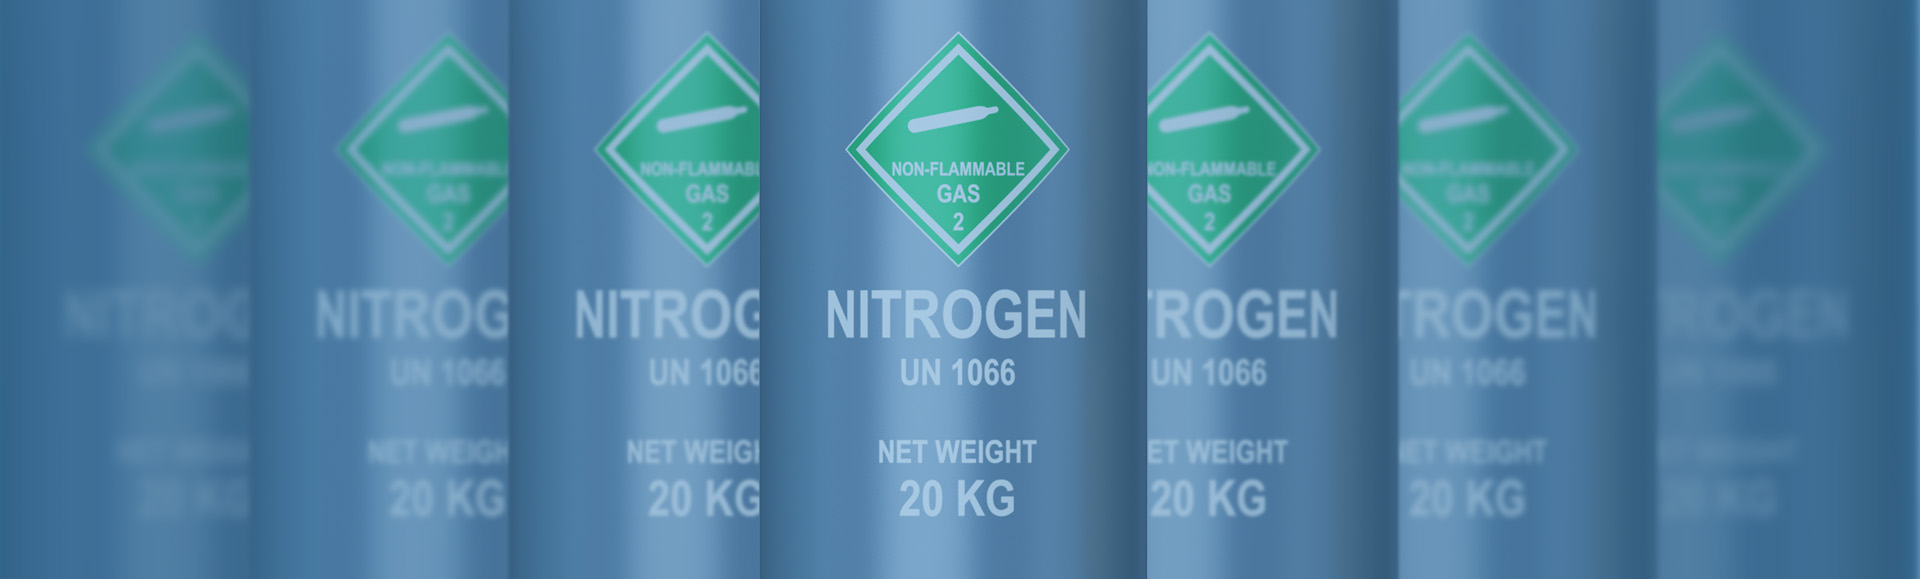 IMG - Buy Nitrogen Gas Seychelles